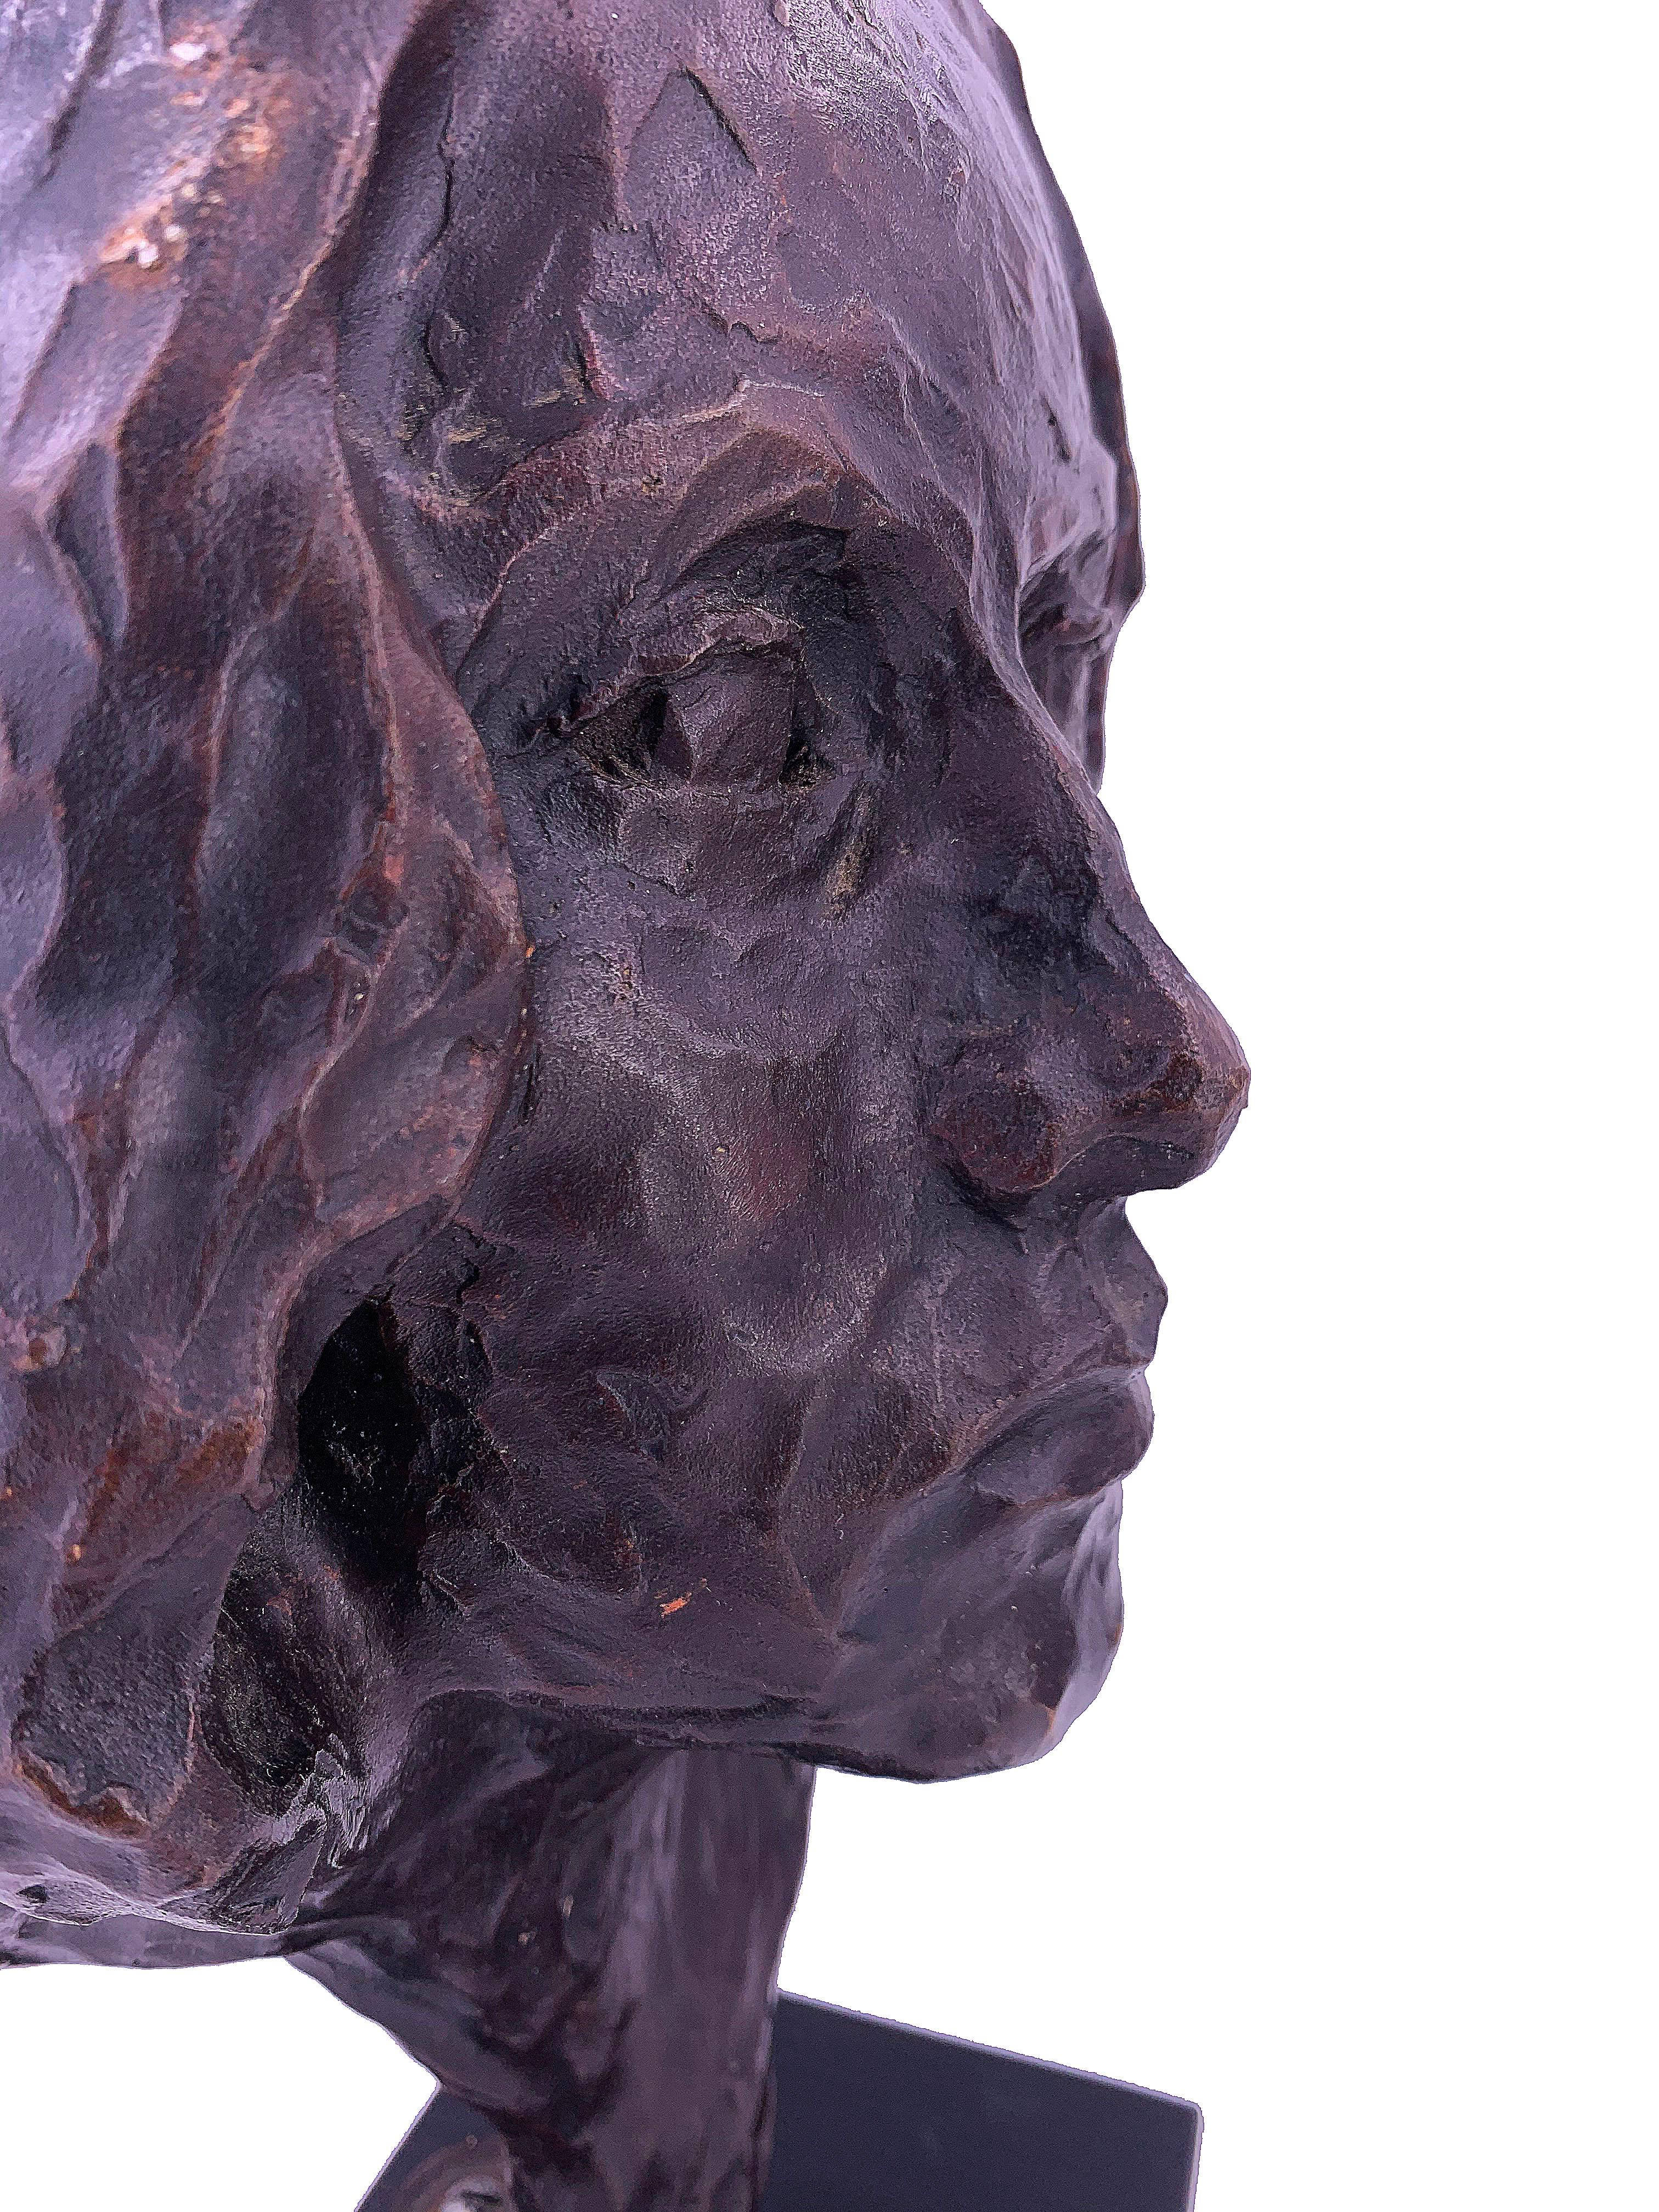 Sculpture d'Odette, 1968. Le sculpteur a capturé de nombreuses émotions dans son visage, et y a insufflé beaucoup de texture. Supporté par une base en bois. Casting à Los Angeles.